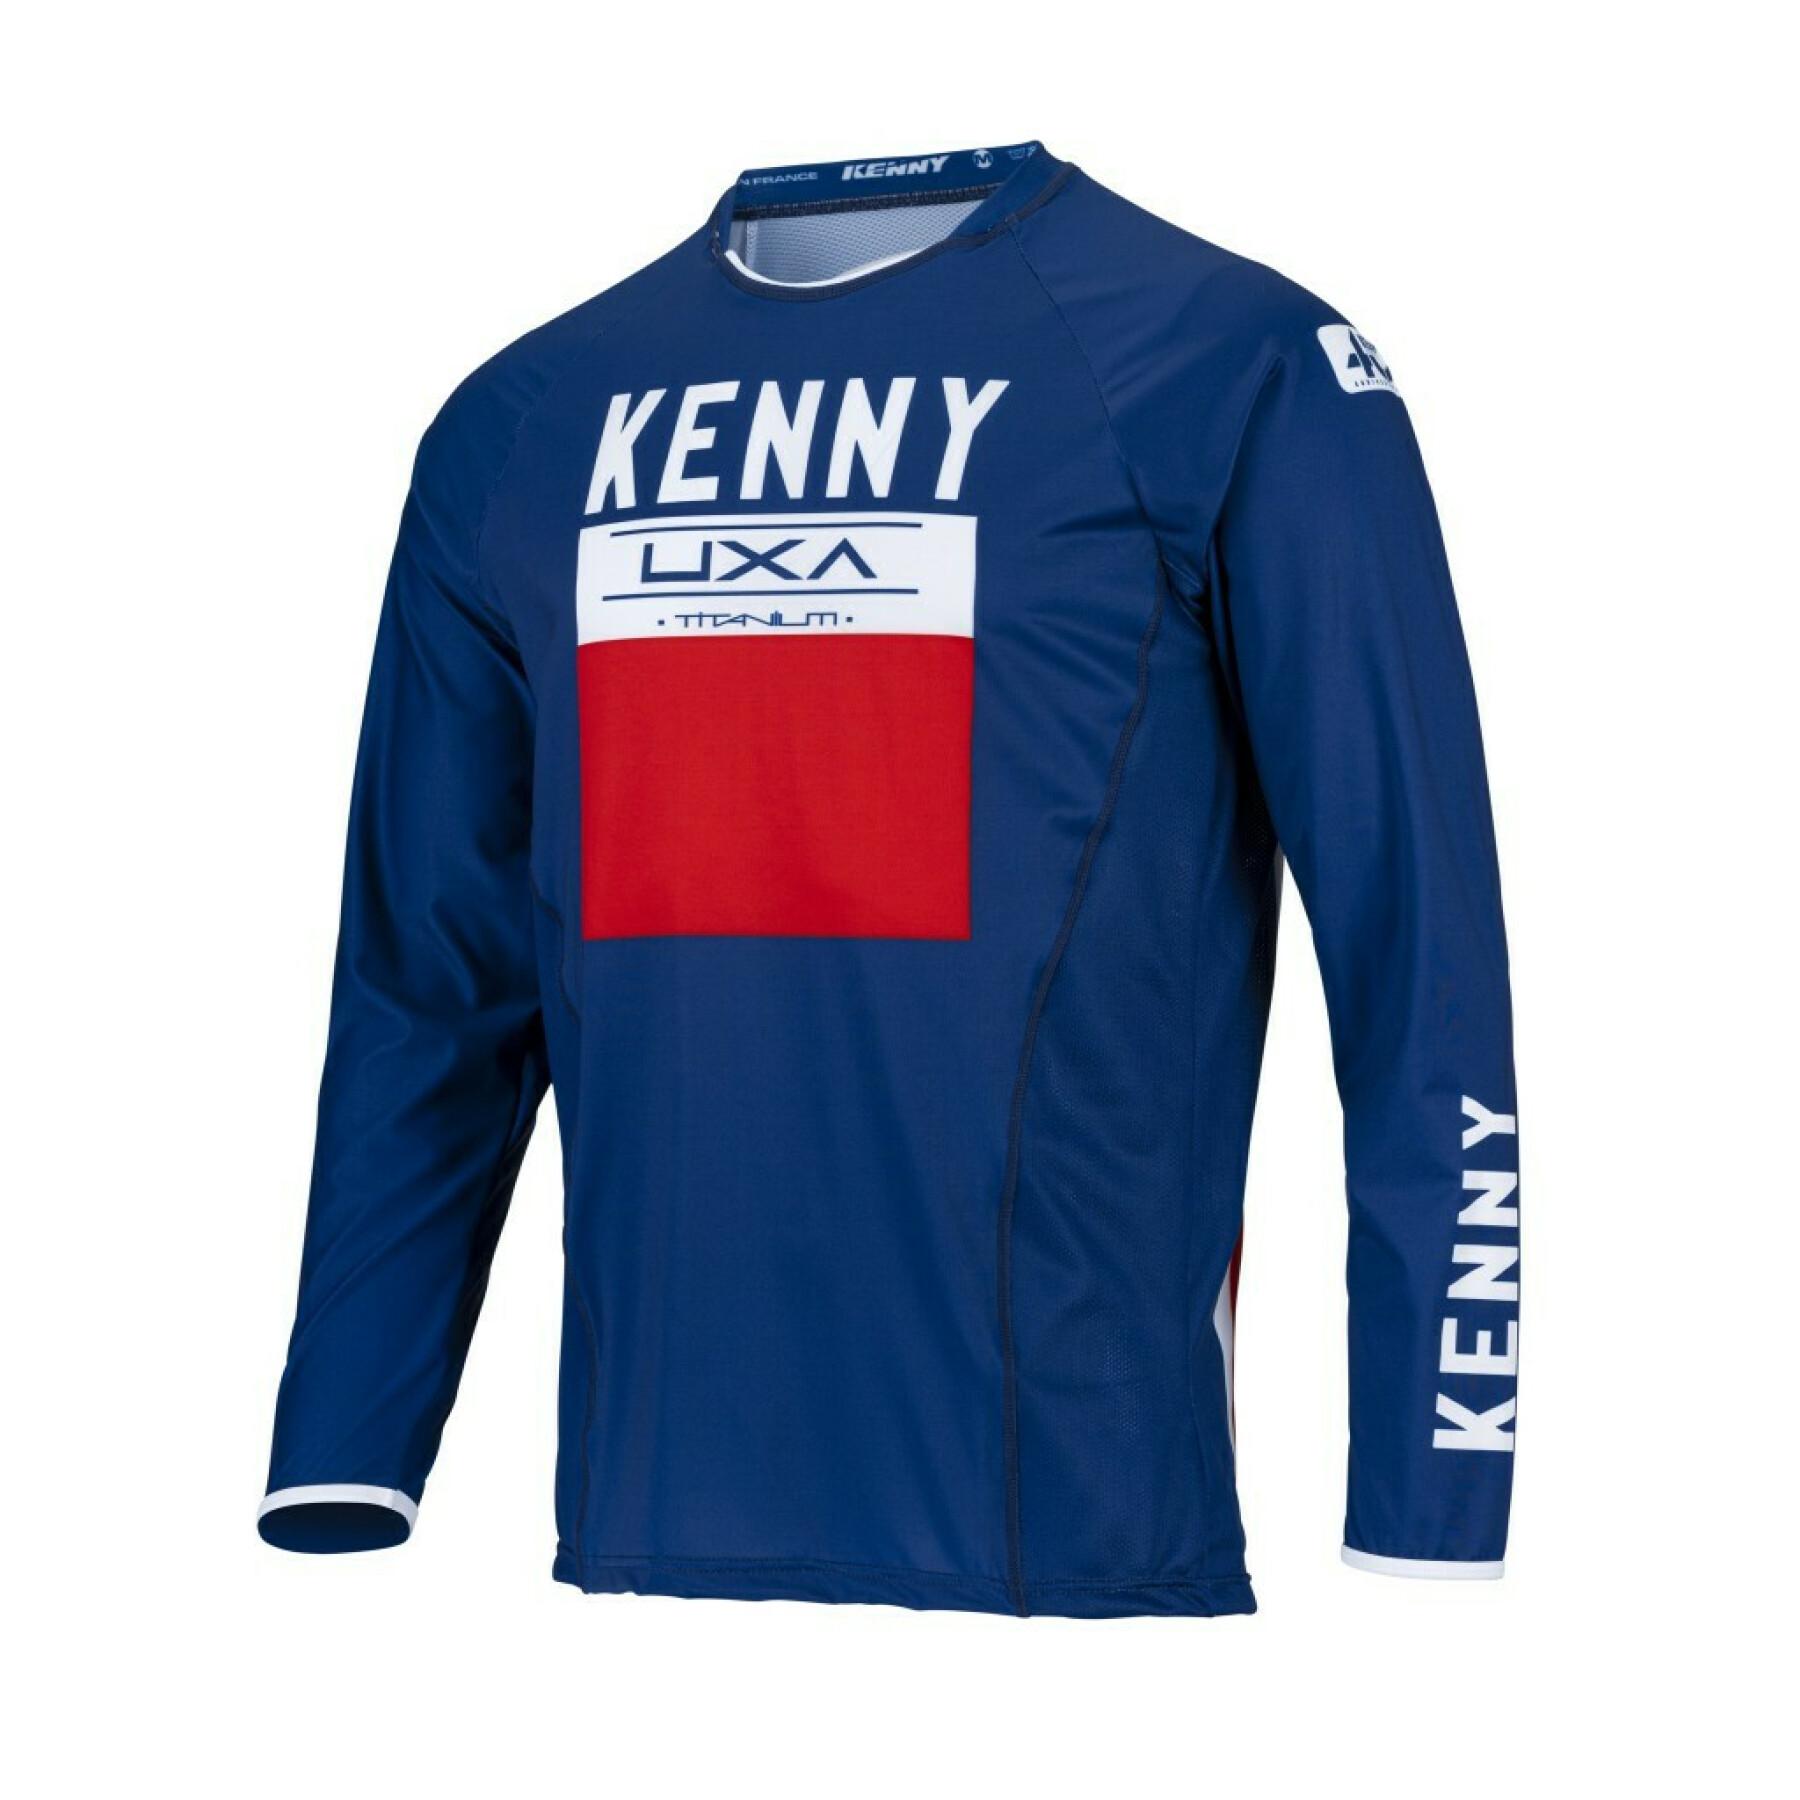 Camiseta de moto cross Kenny titanium